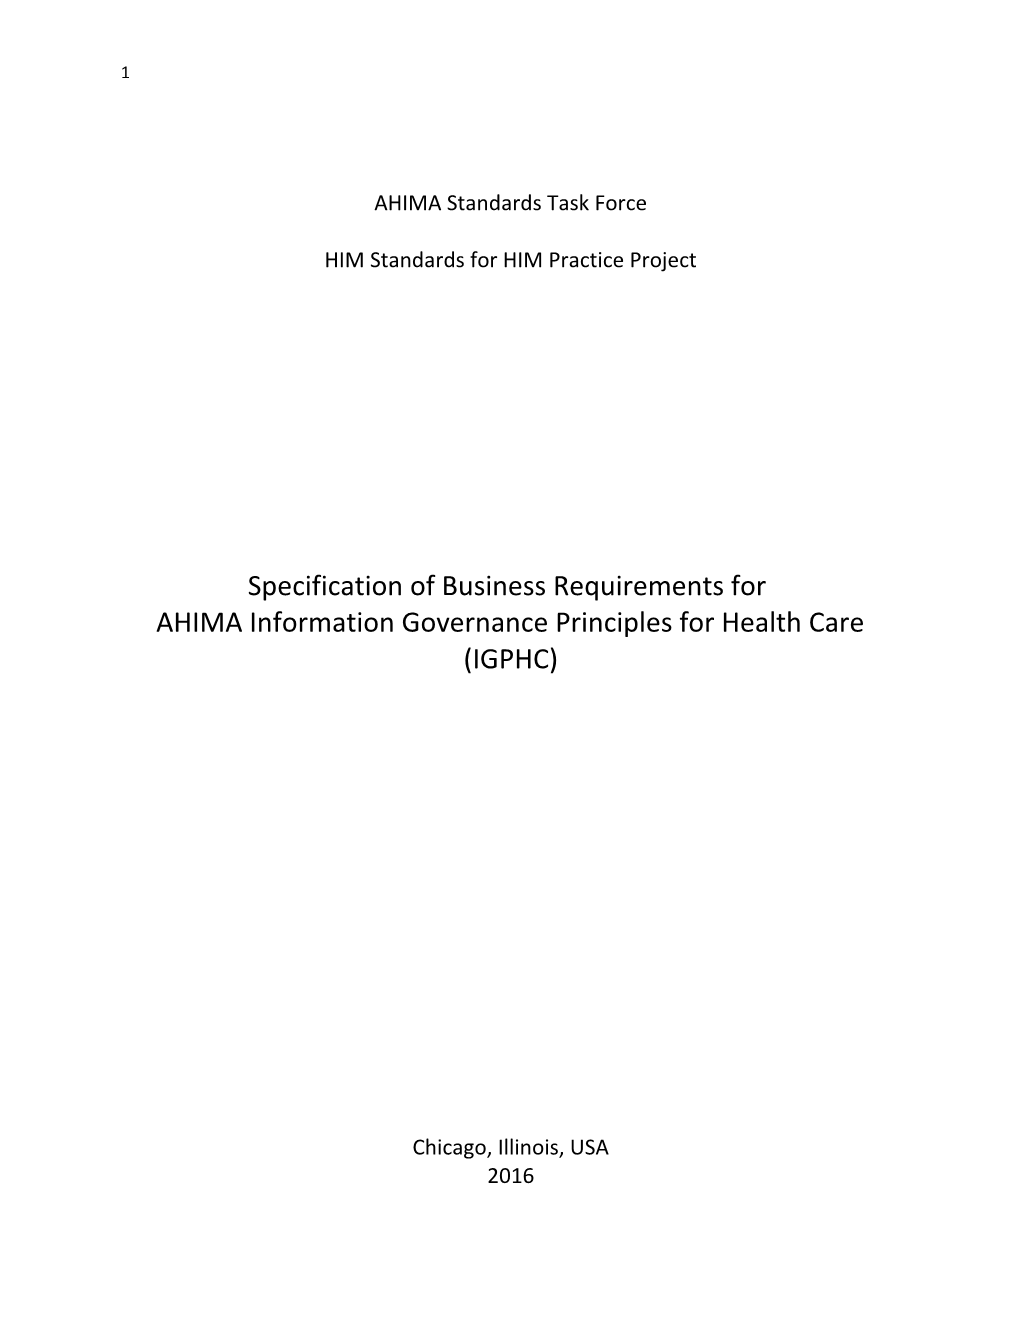 AHIMA Standards Task Force